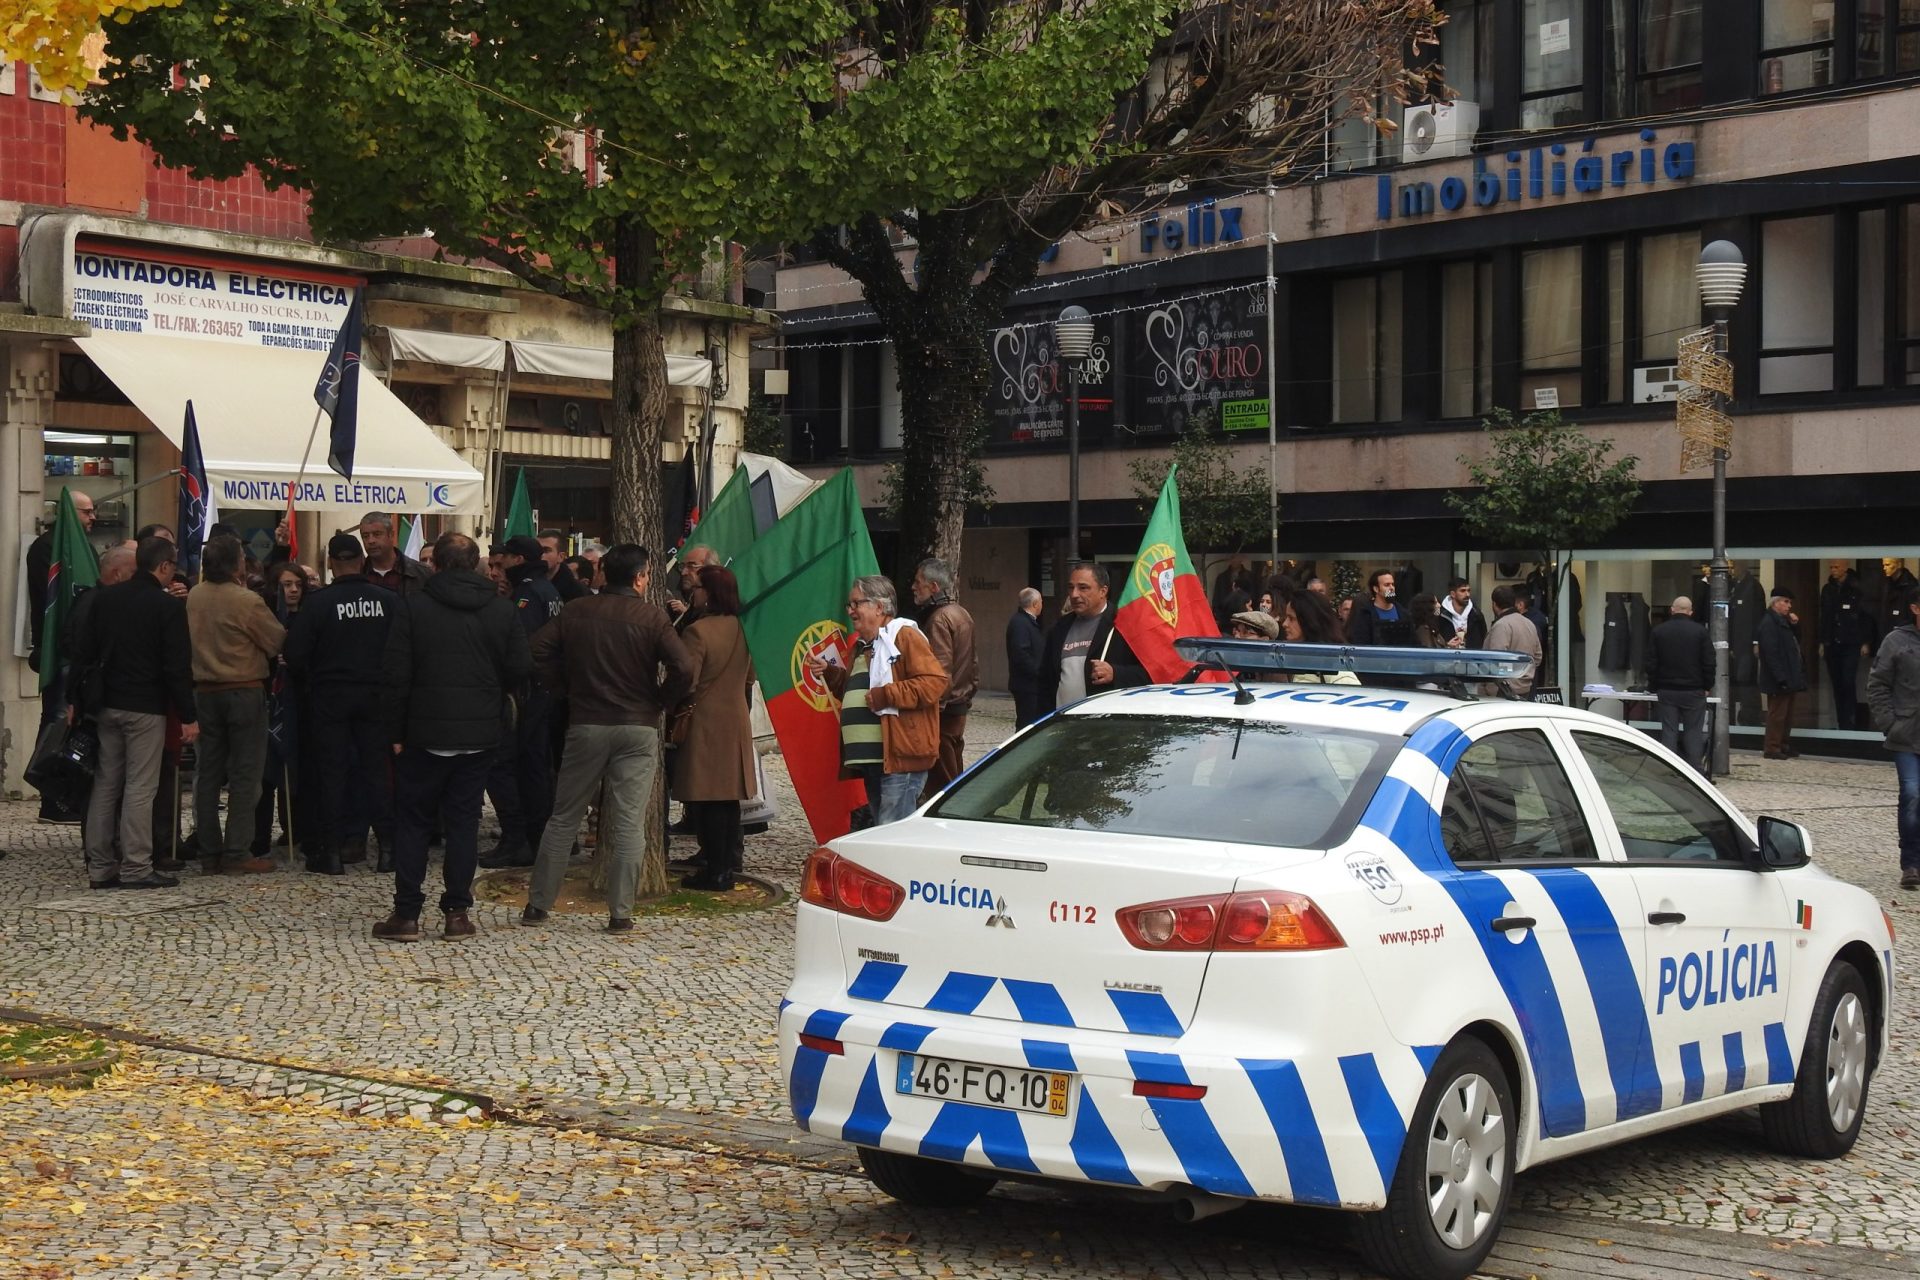 PSP evita confrontos entre manifestantes e contramanifestantes em Braga